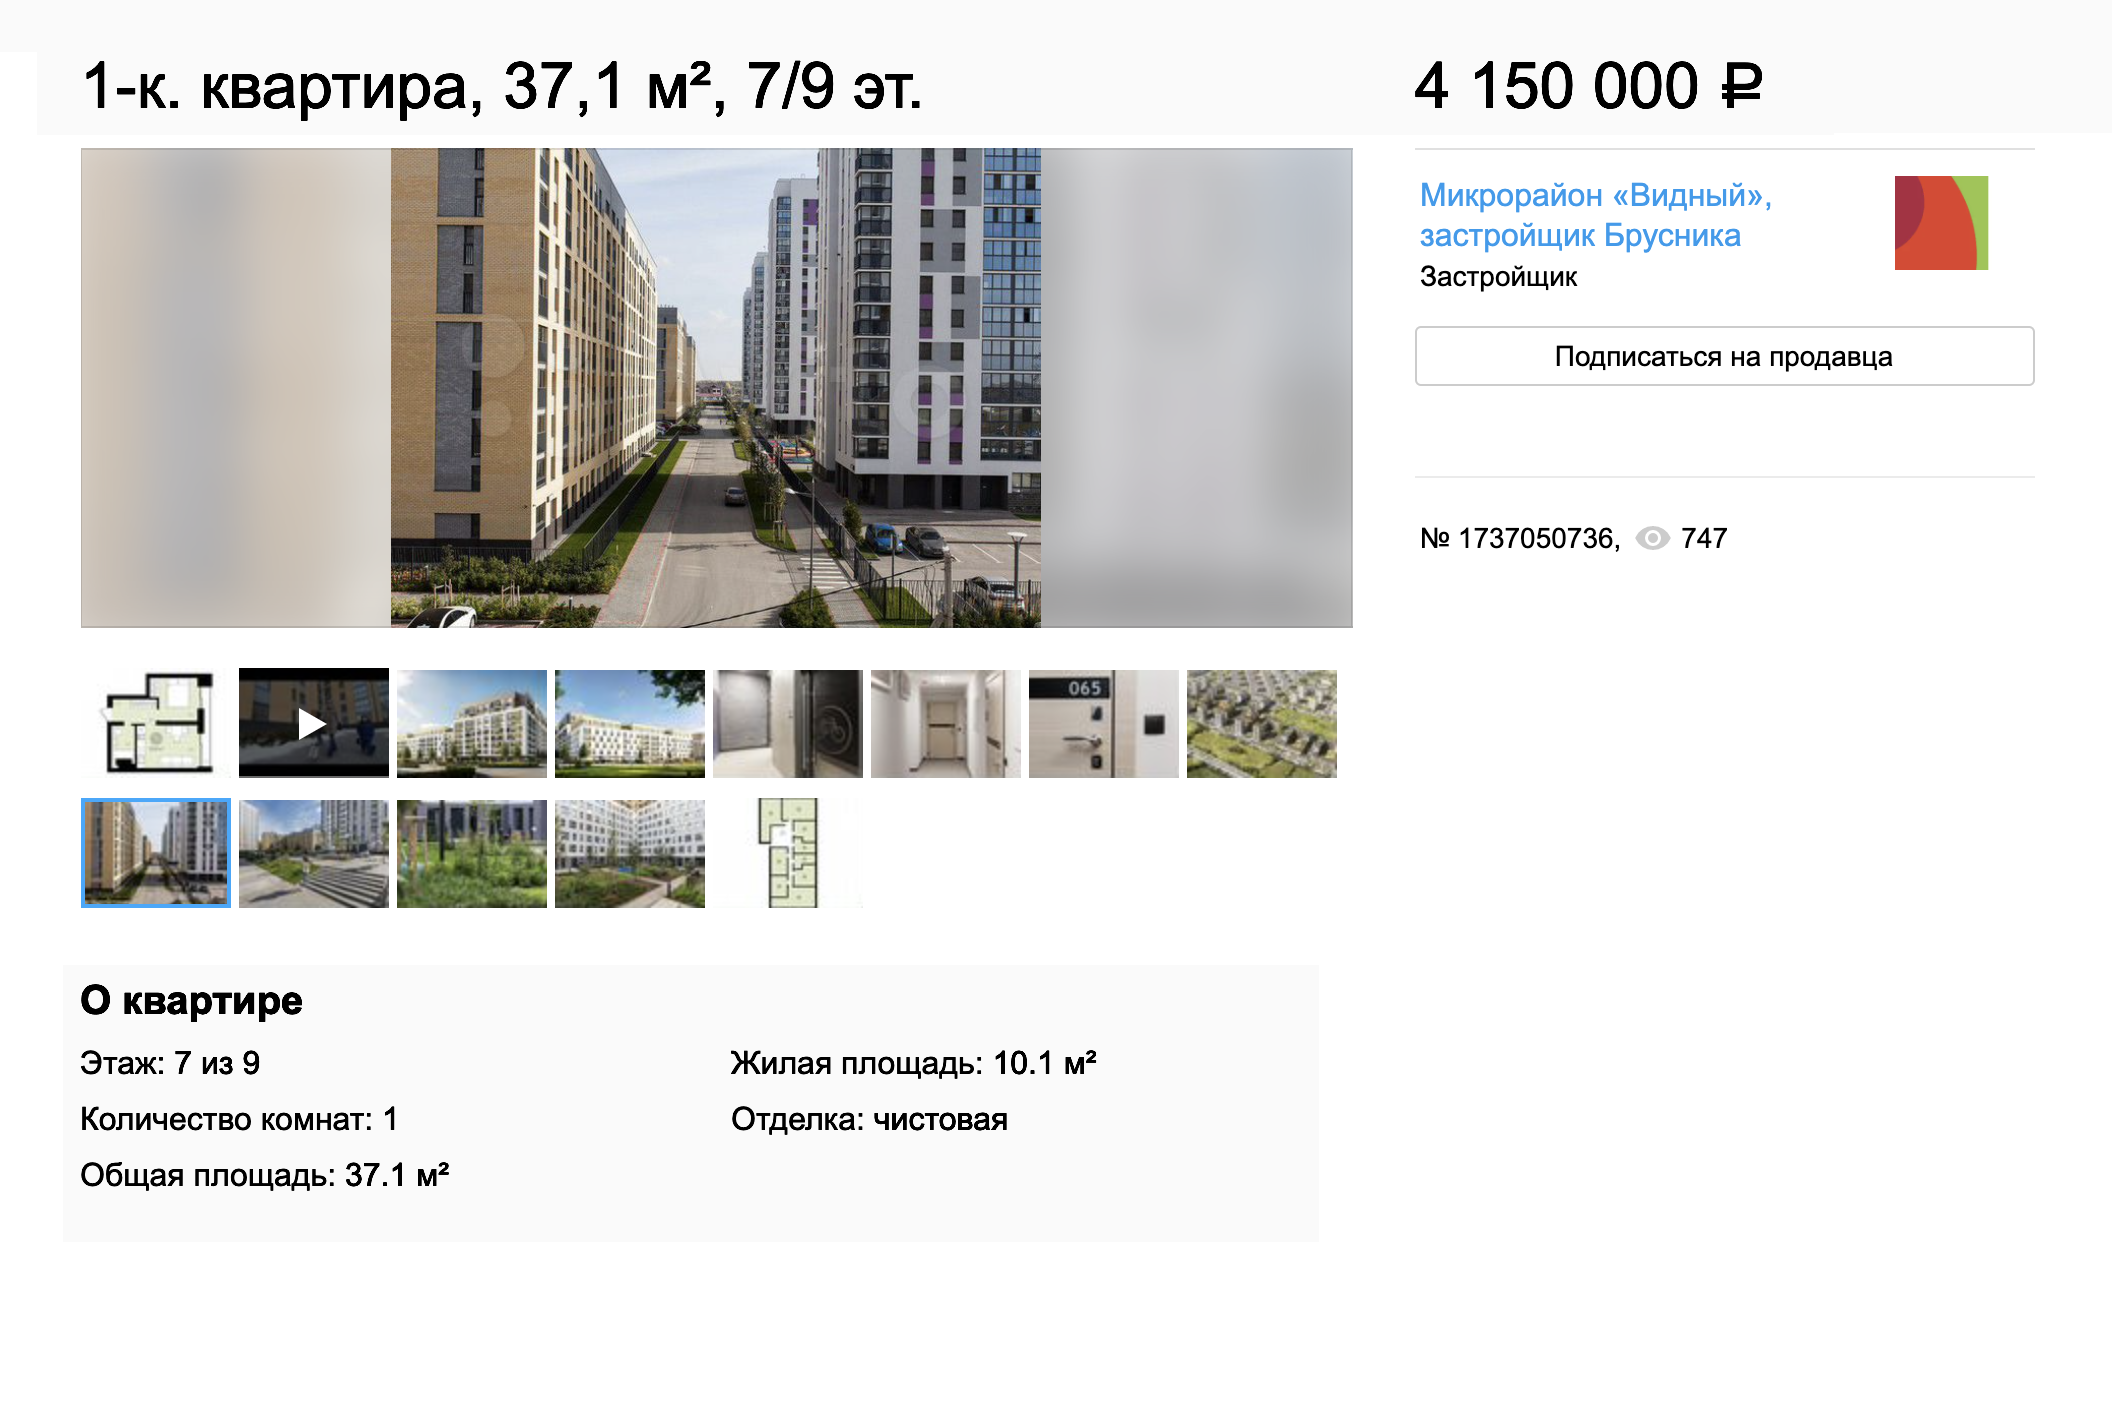 Однокомнатная квартира в ЖК «Видный» рядом с объездной дорогой сдается в первом квартале 2022 года. Цена — 4,15 млн рублей